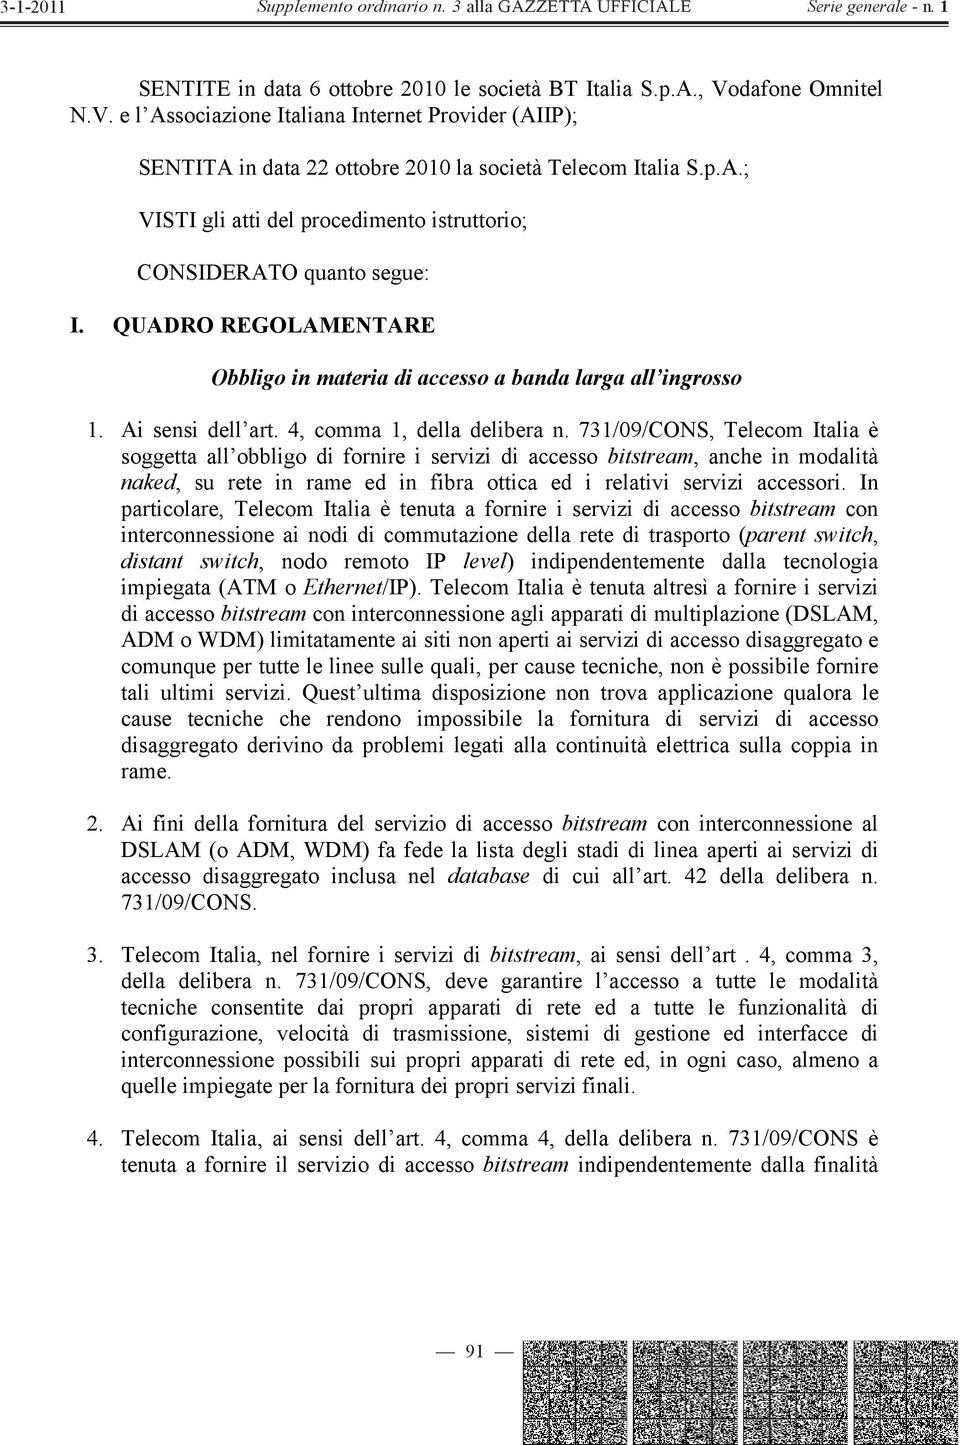 731/09/CONS, Telecom Italia è soggetta all obbligo di fornire i servizi di accesso bitstream, anche in modalità naked, su rete in rame ed in fibra ottica ed i relativi servizi accessori.